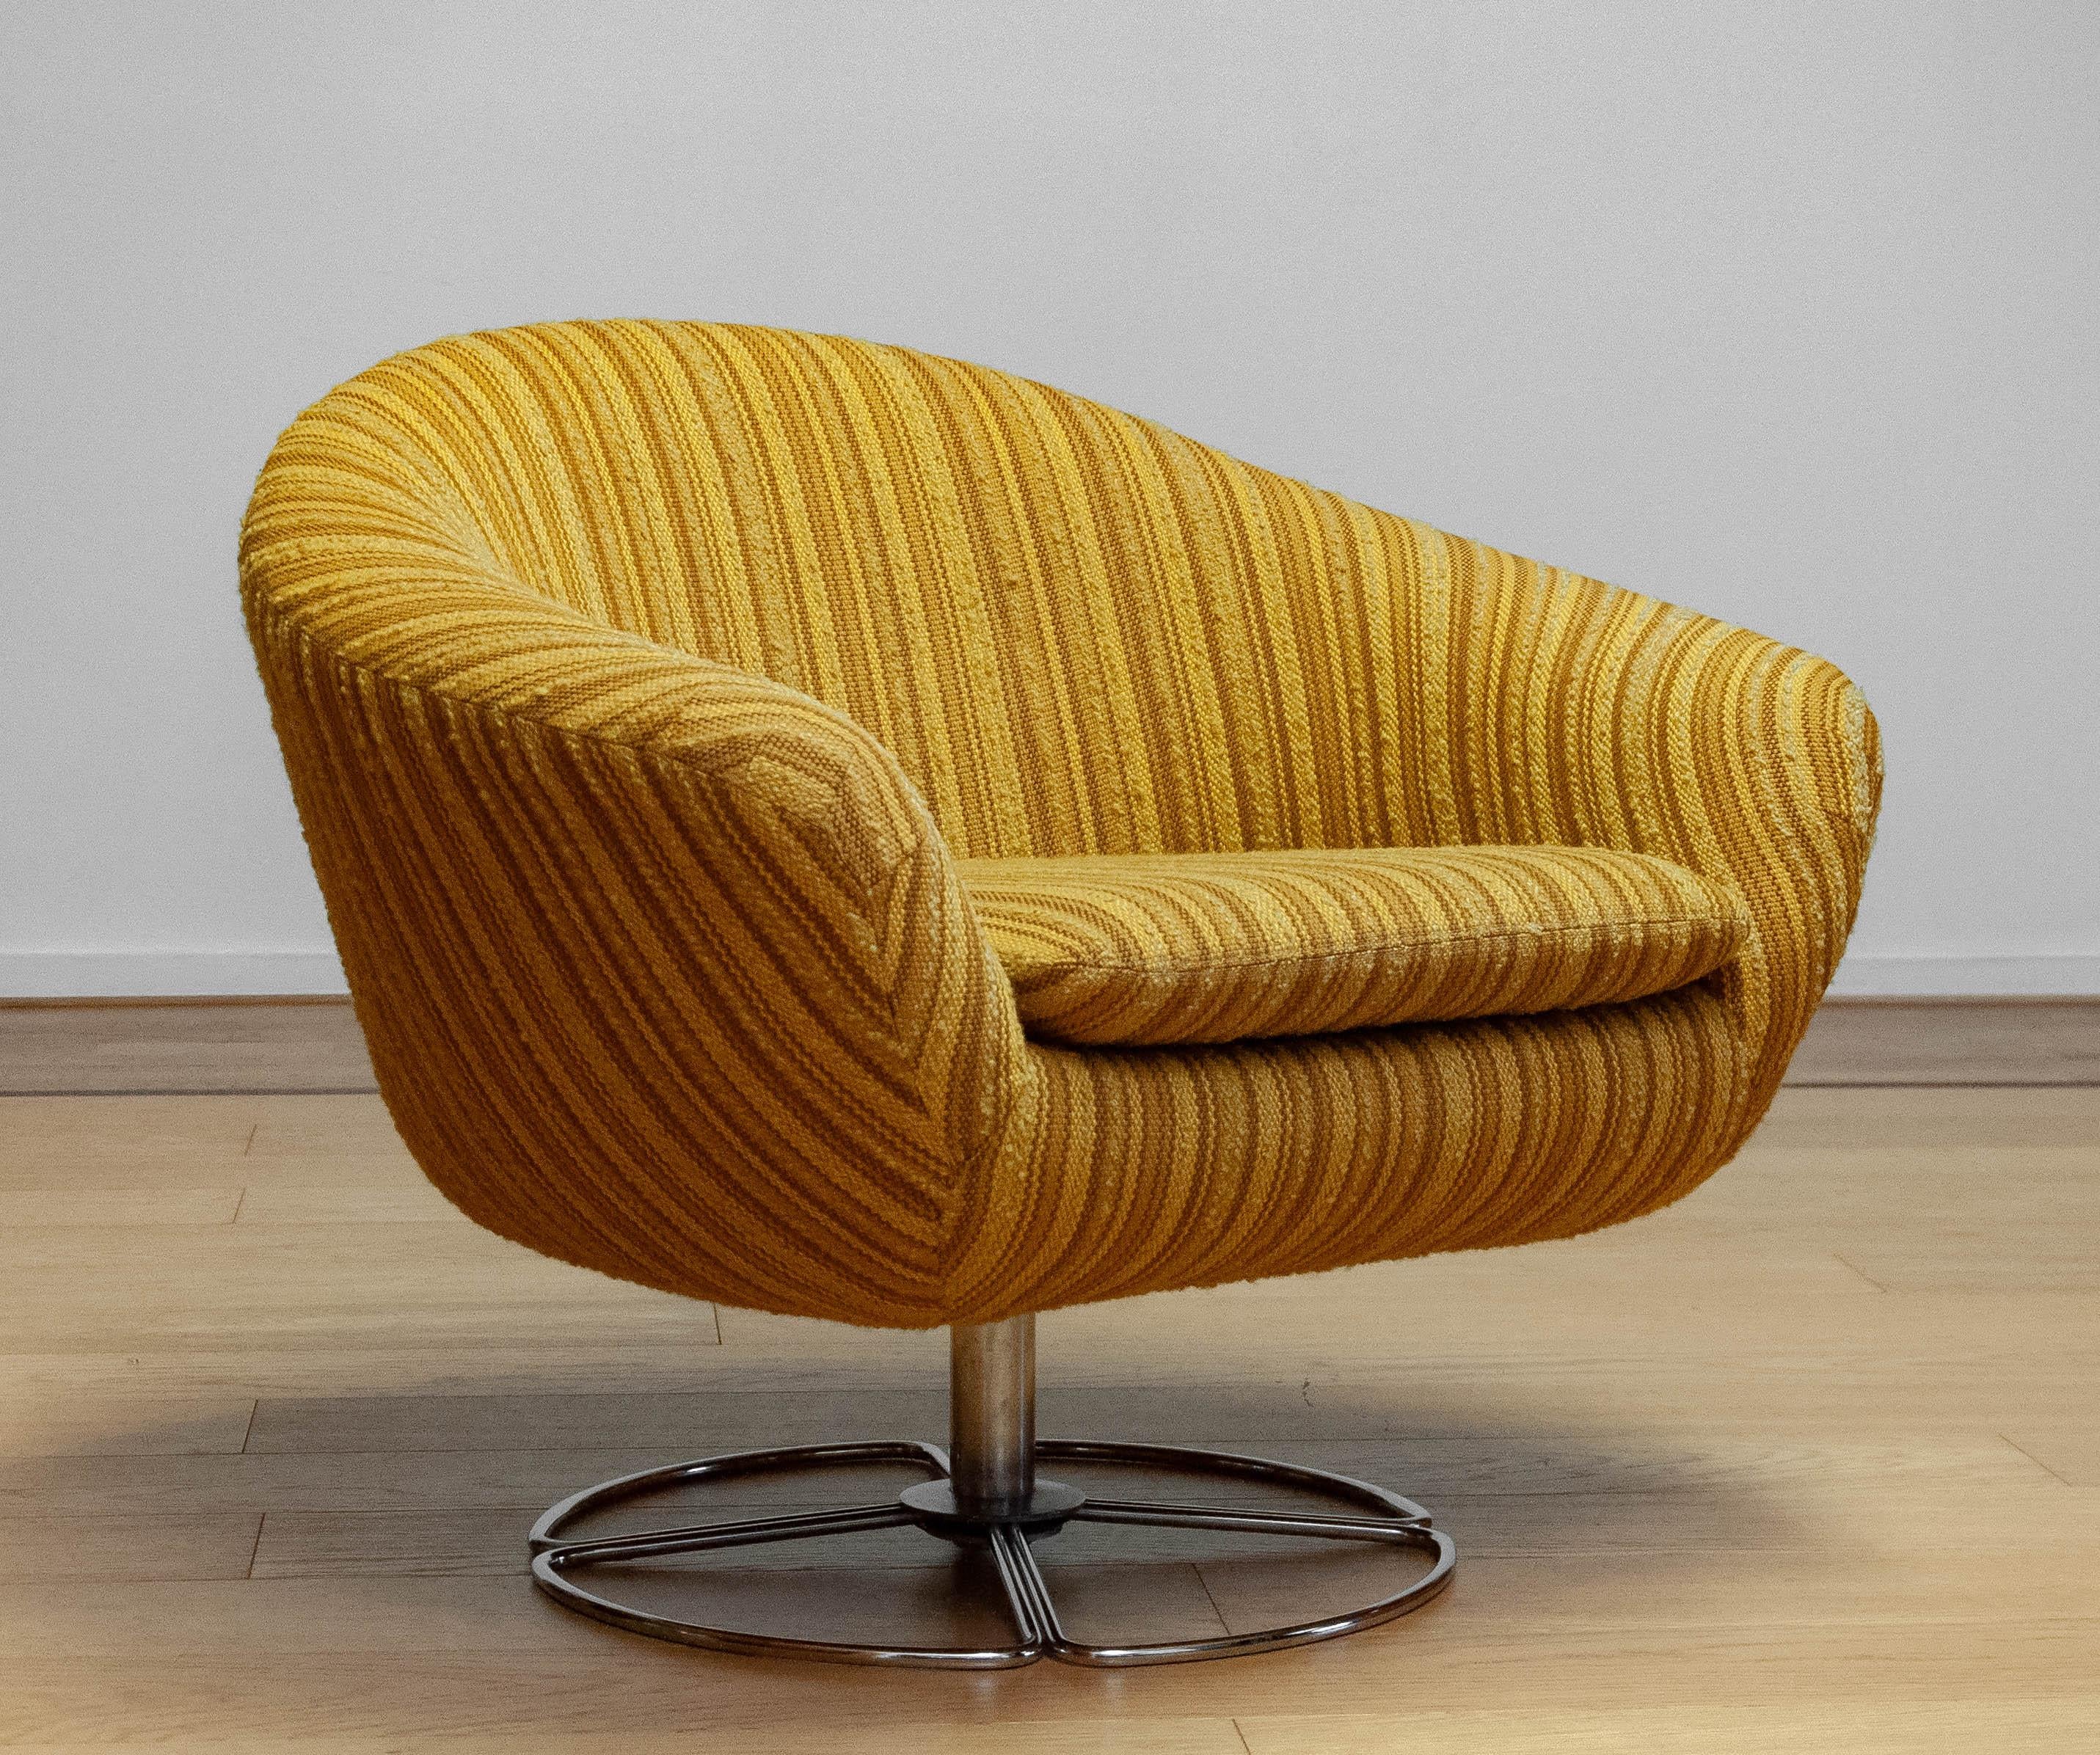 Schöner Pod / Drehstuhl mit dem originalen maisgelb gestreiften Stoff gepolstert. Der Stuhl wurde in den 1960er Jahren von dem schwedischen Hersteller 